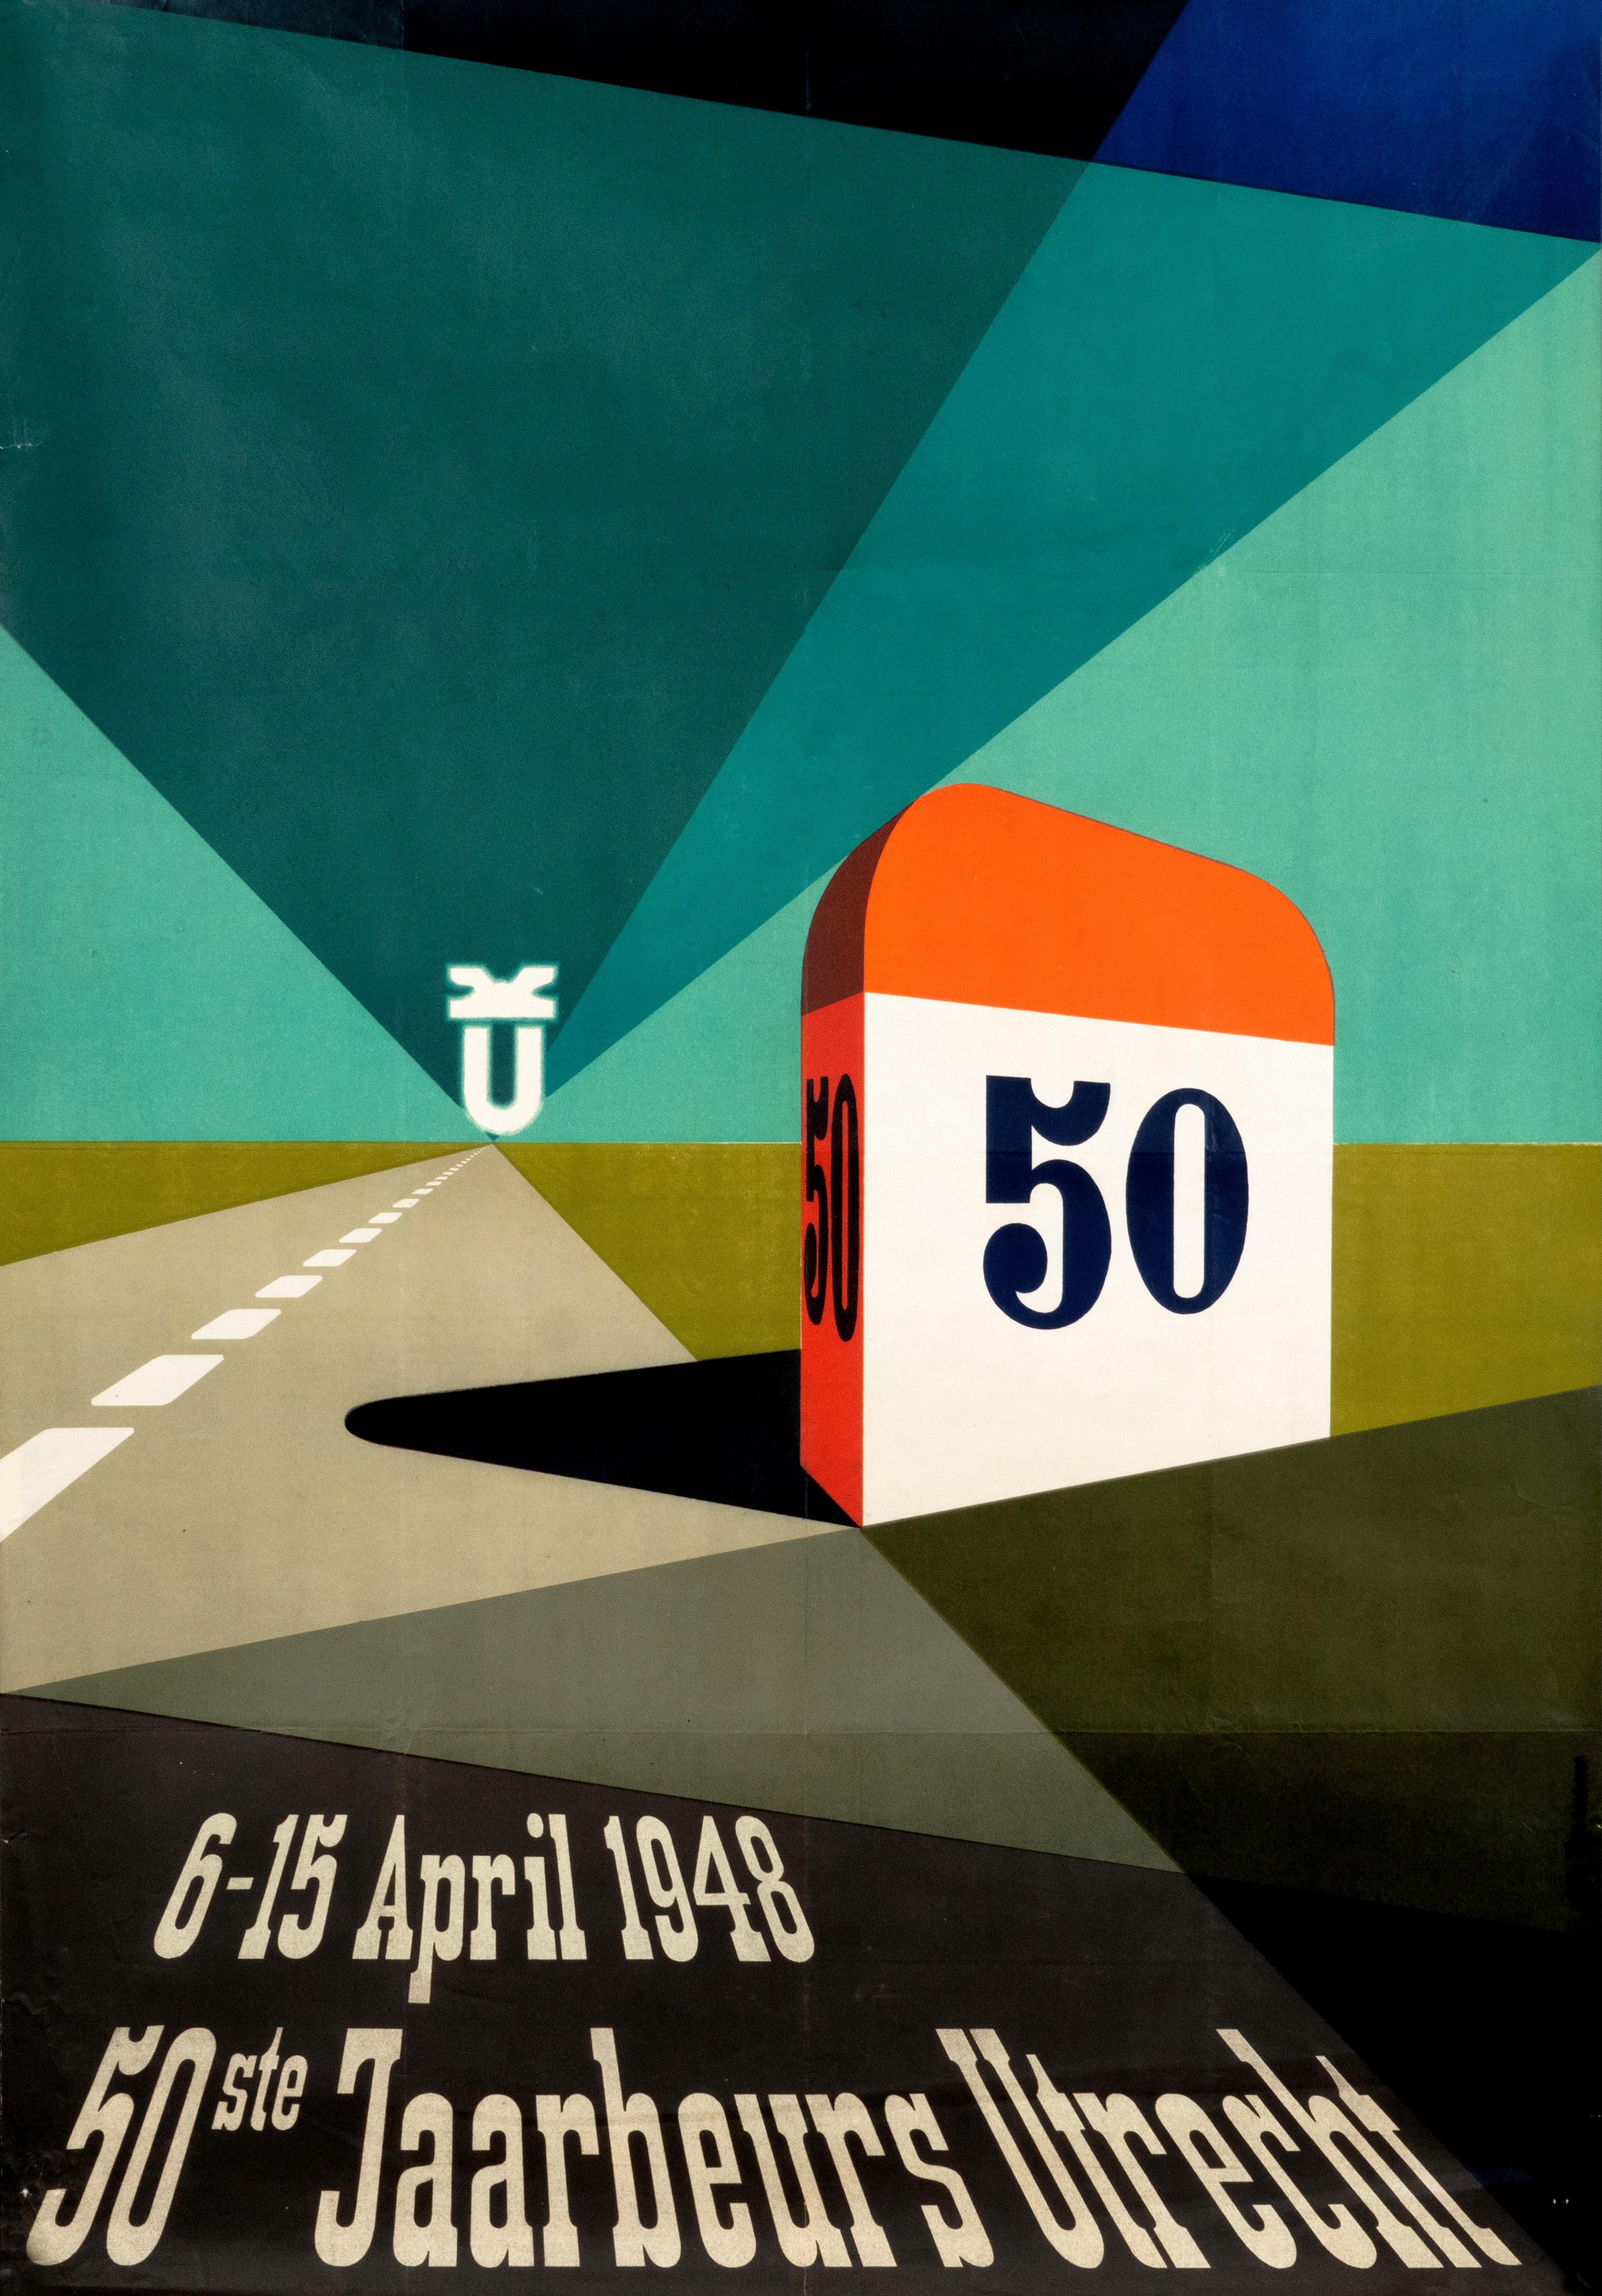 Otto Treumann Abstract Print - "50ste Jaarbeurs Utrecht 1948" Original Dutch Mid-Century Trade Fair Poster